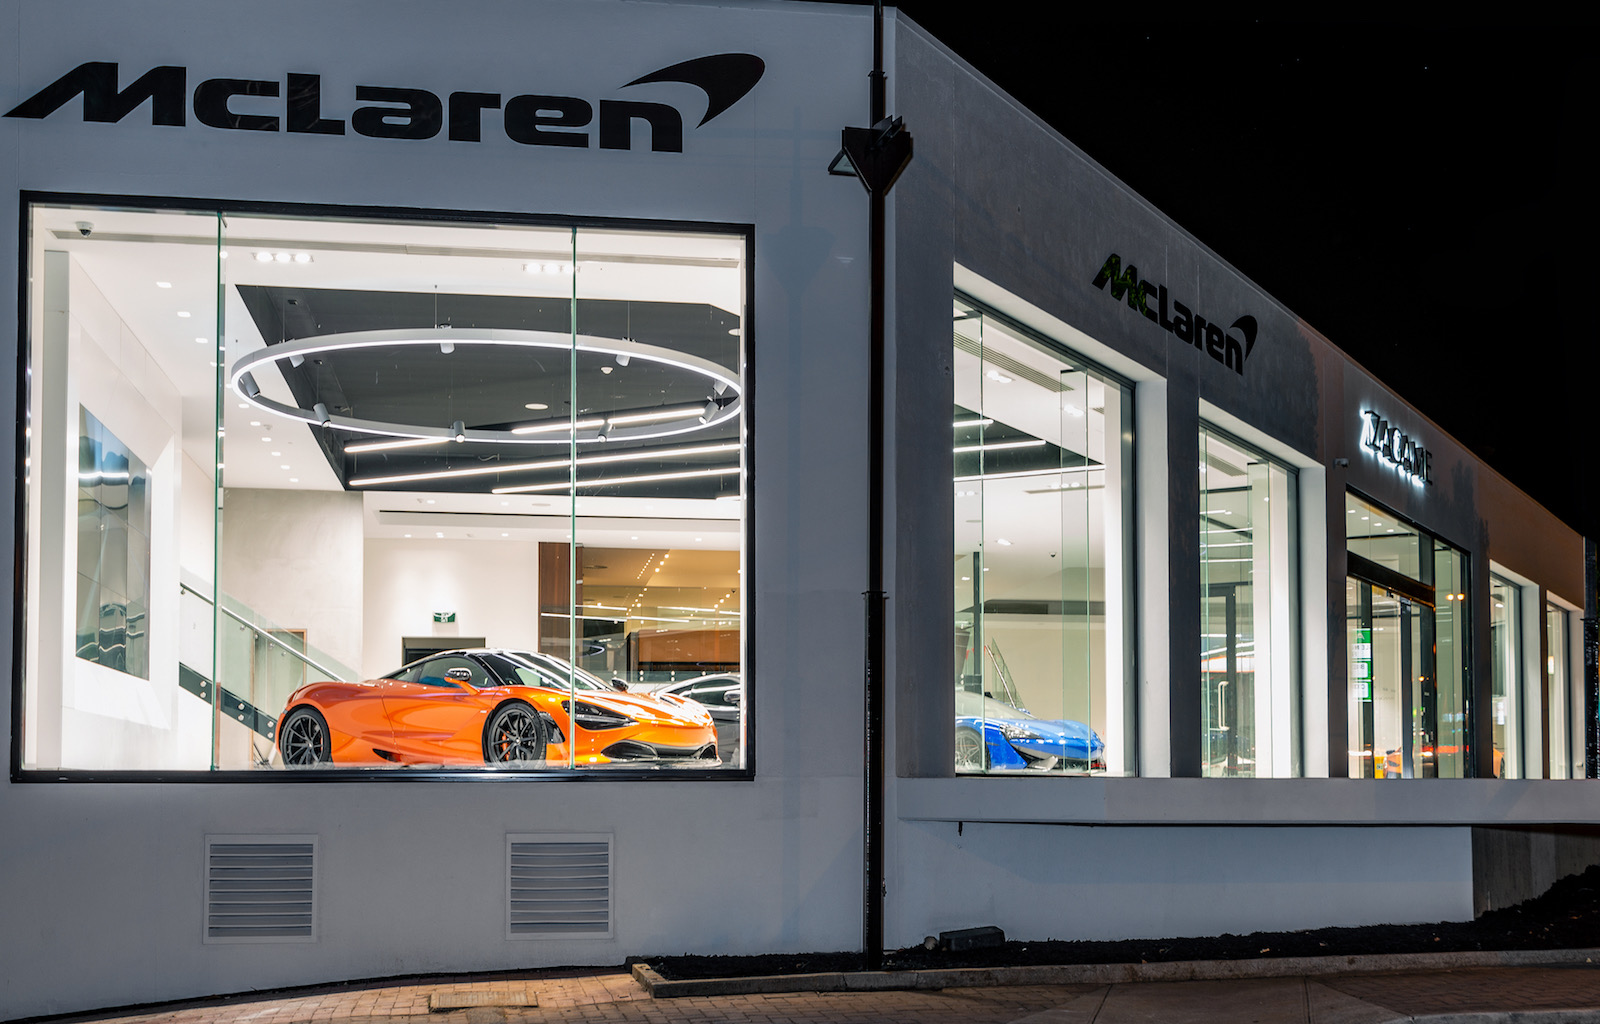 McLaren opens new showroom in Adelaide